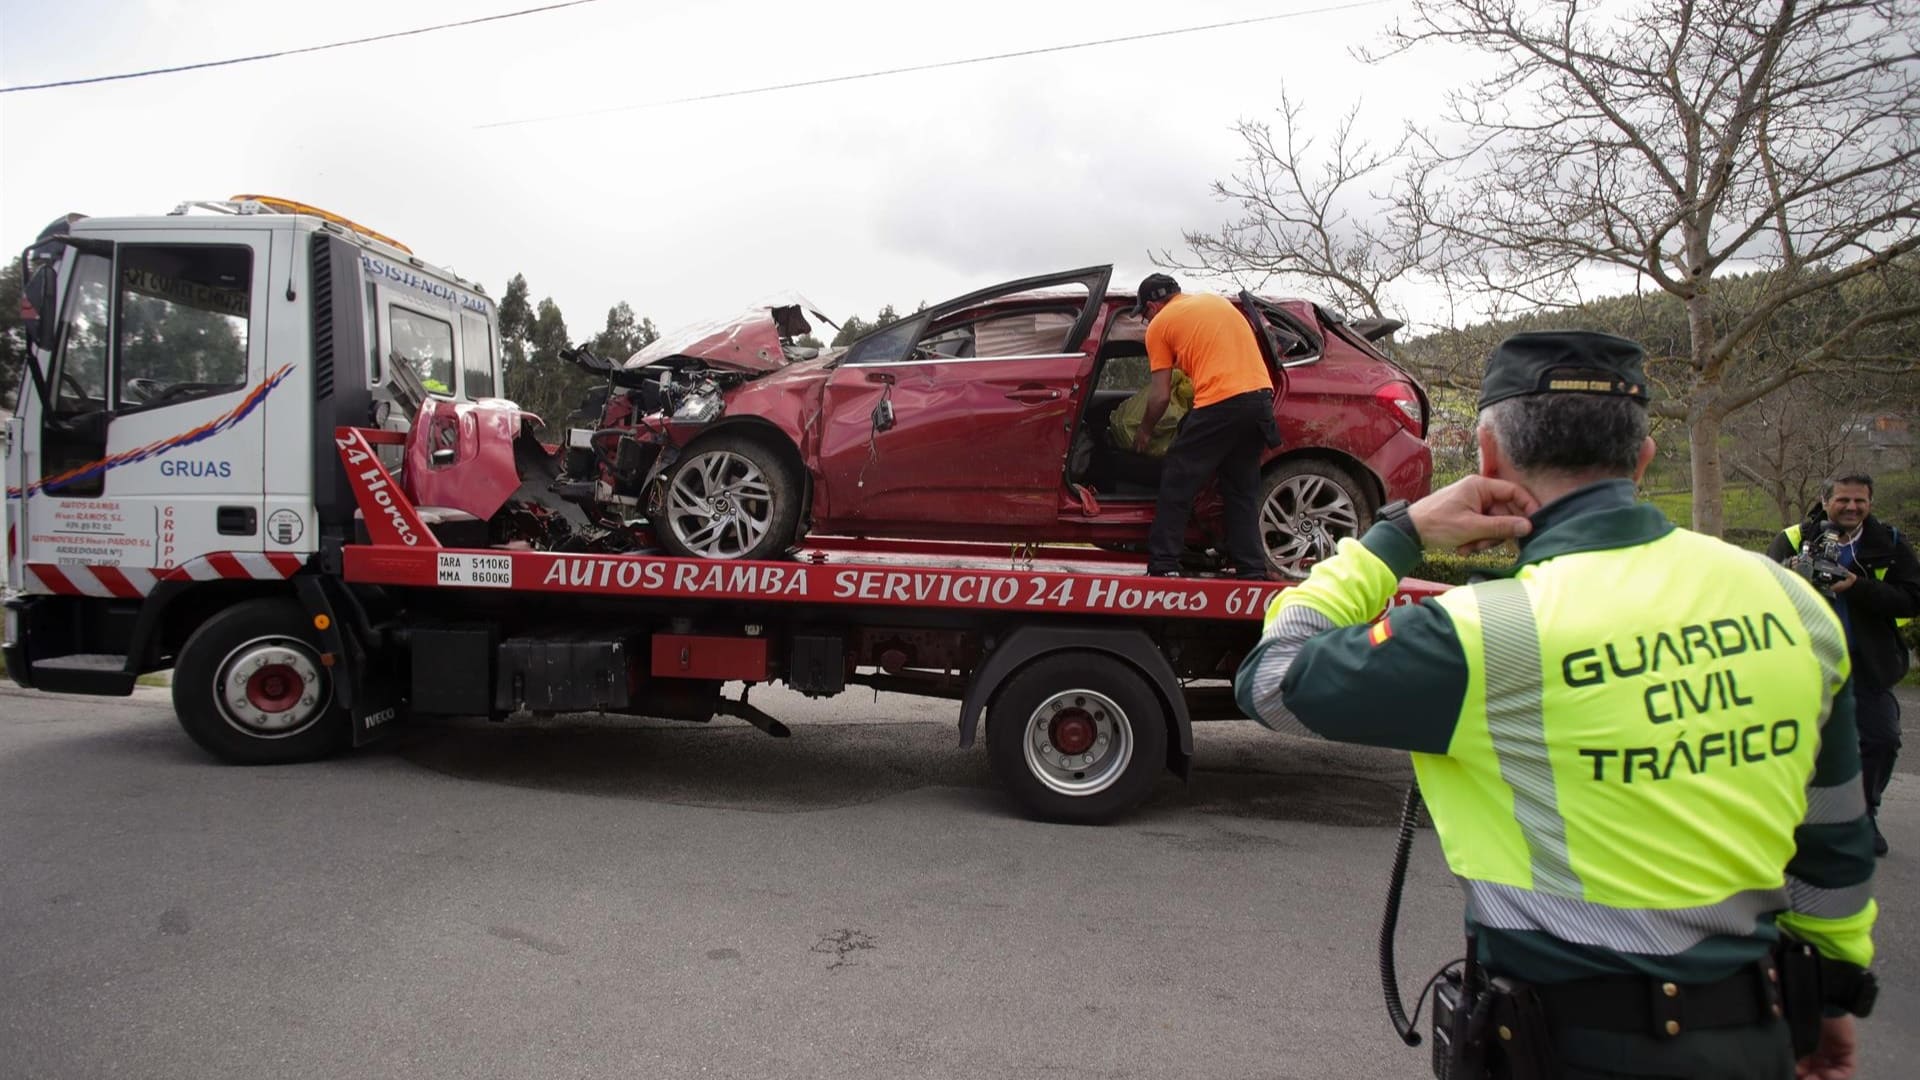 El vehículo siniestrado en Xove en el que fallecieron cuatro jóvenes | EP